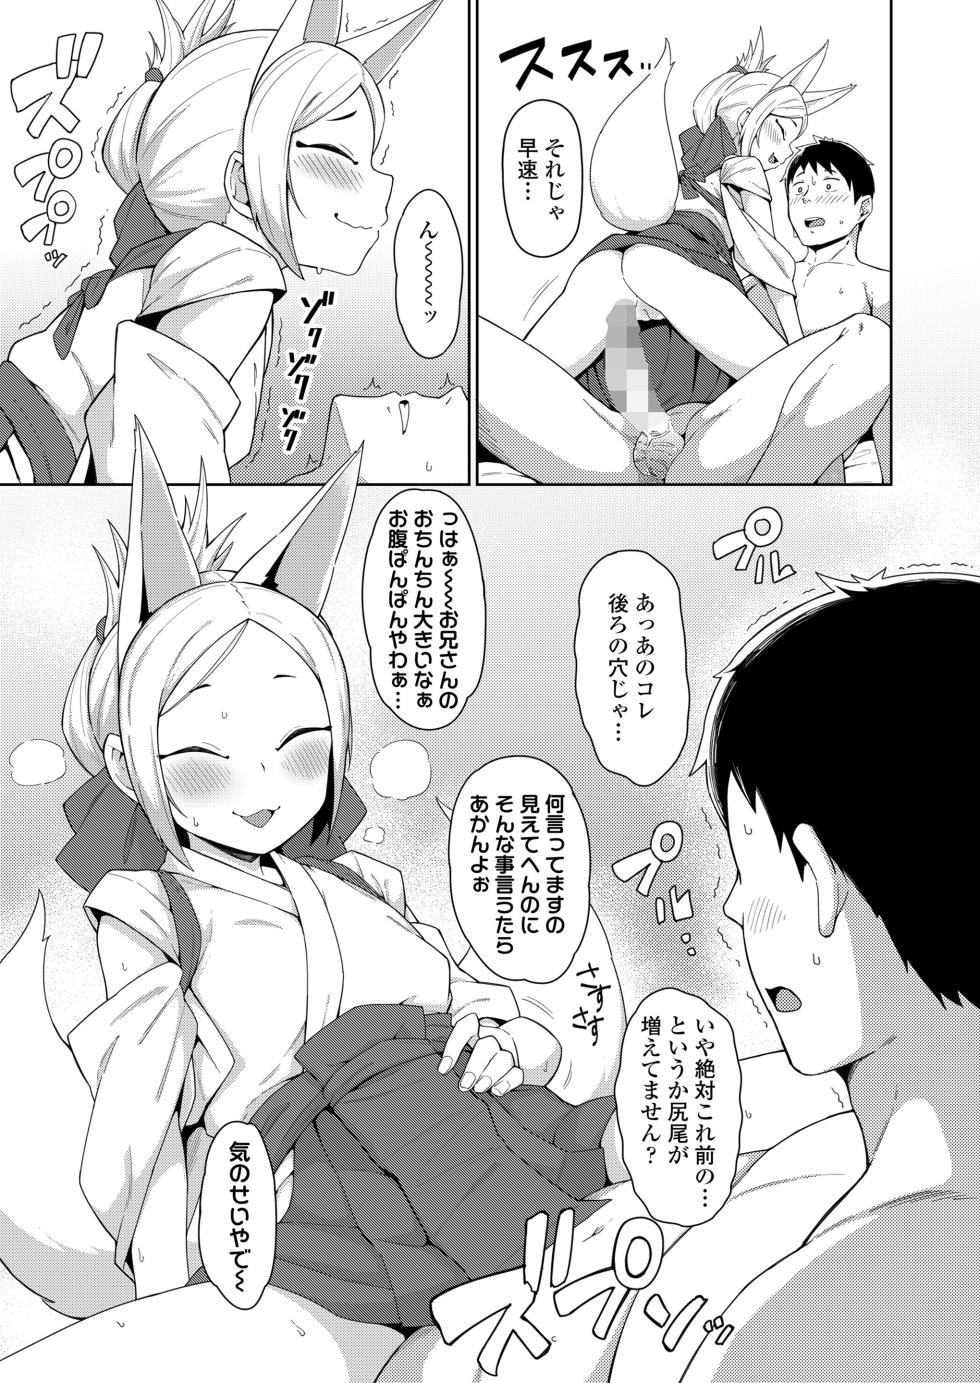 Towako 16 [Digital] - Page 37